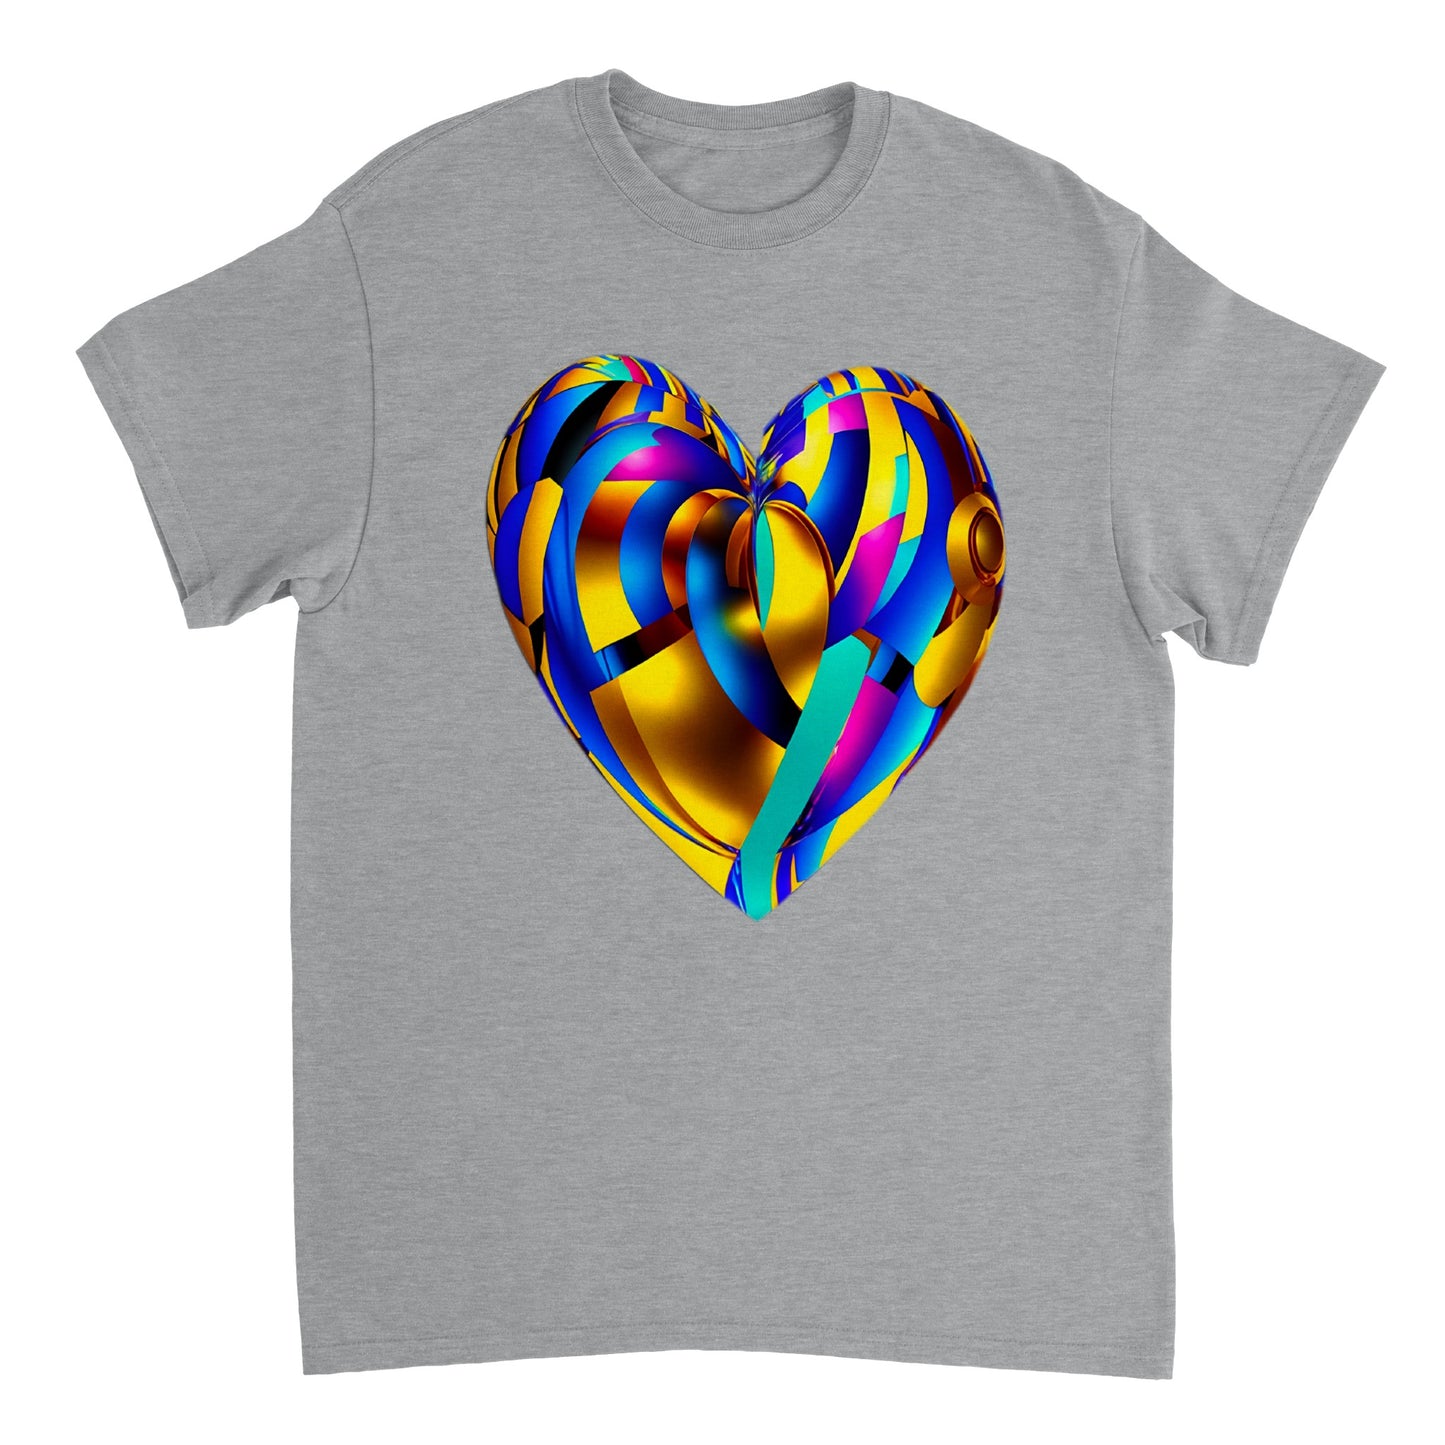 Love Heart - Heavyweight Unisex Crewneck T-shirt 63